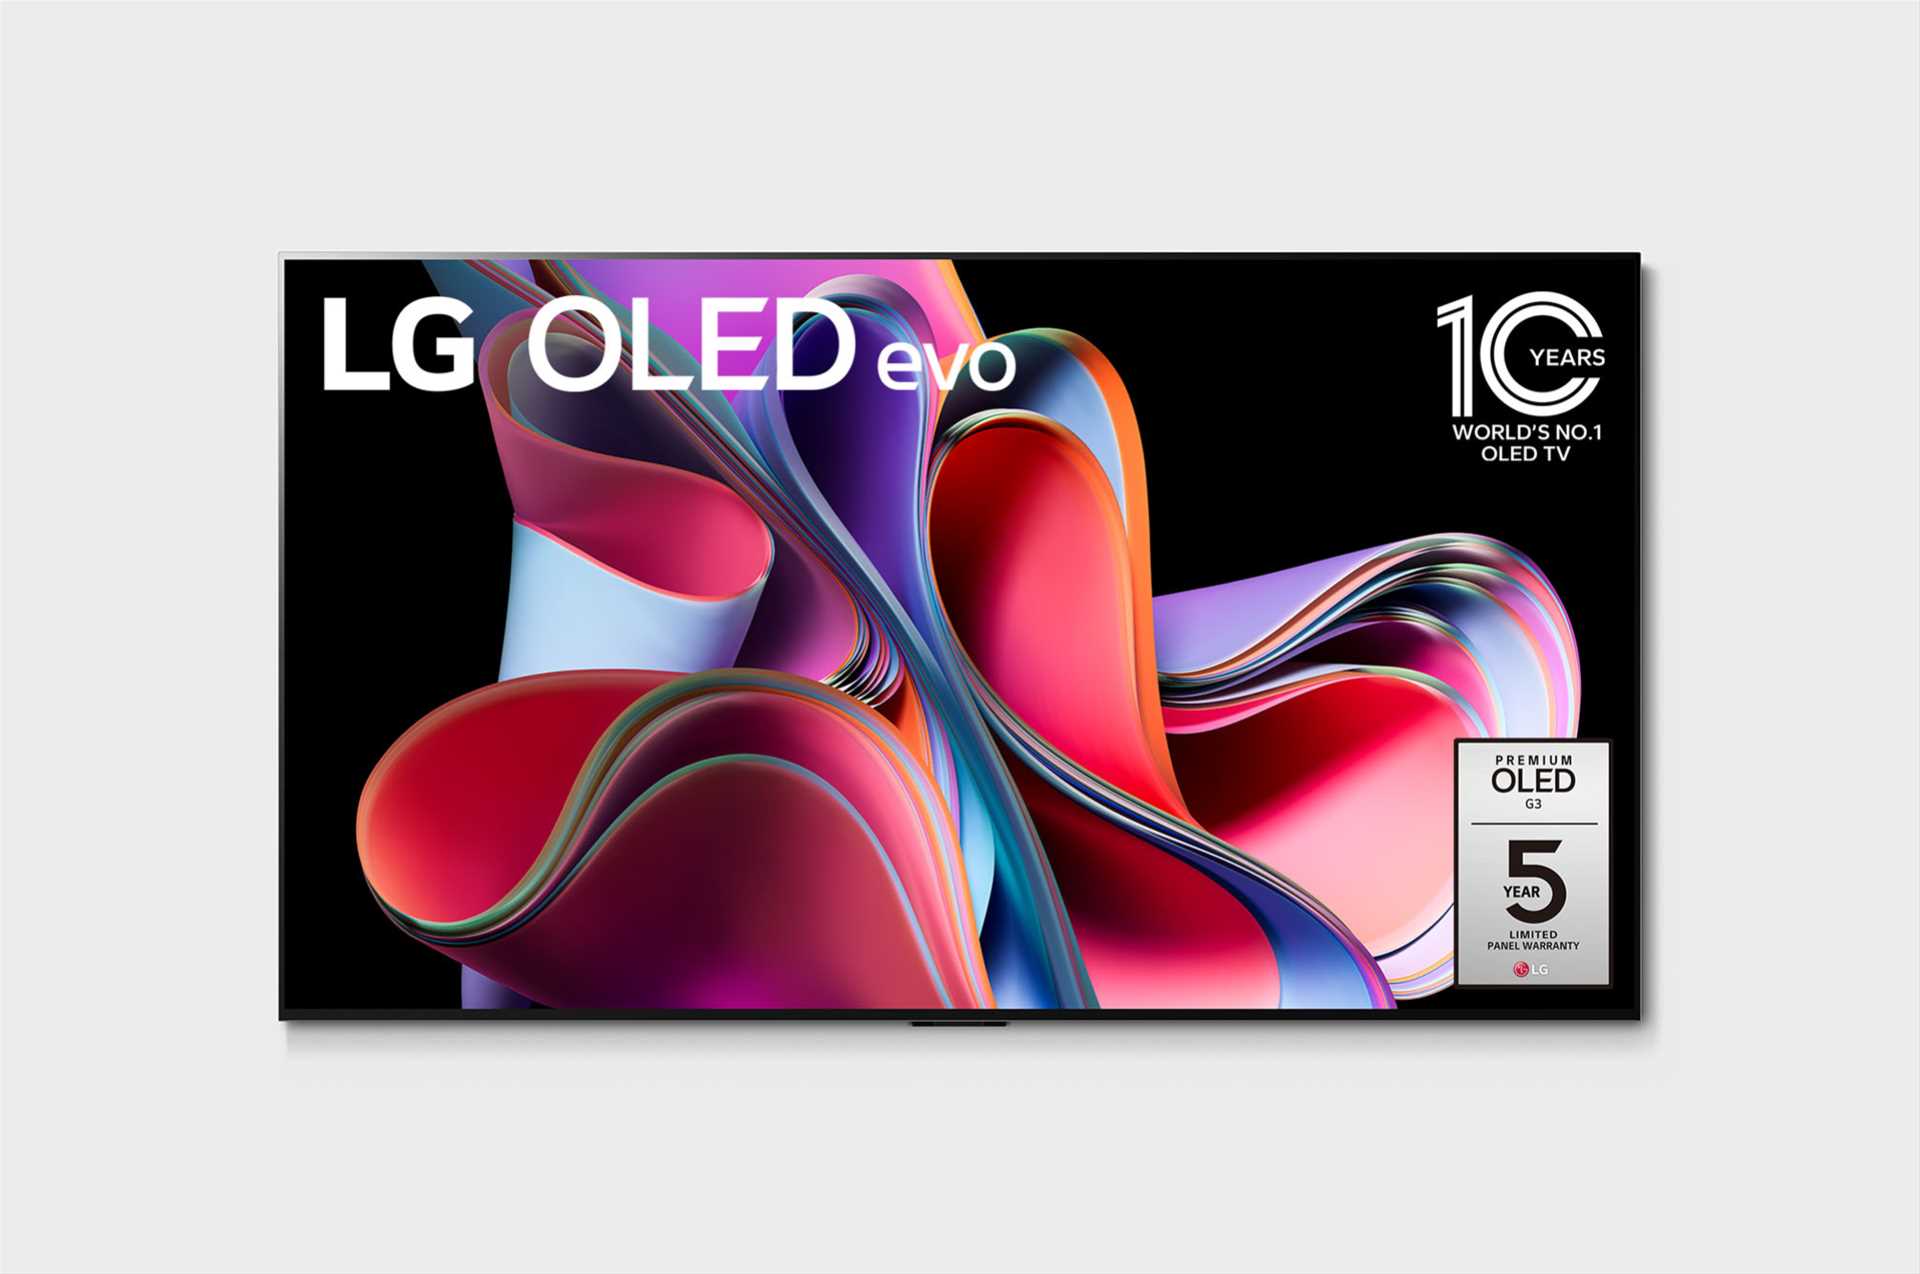 מסך טלוויזיה בטכנולוגיית LG OLED evo Gallery Edition - בגודל 65 אינץ' חכמה ברזולוציית 4K דגם: OLED65G36LA - תמונה 1